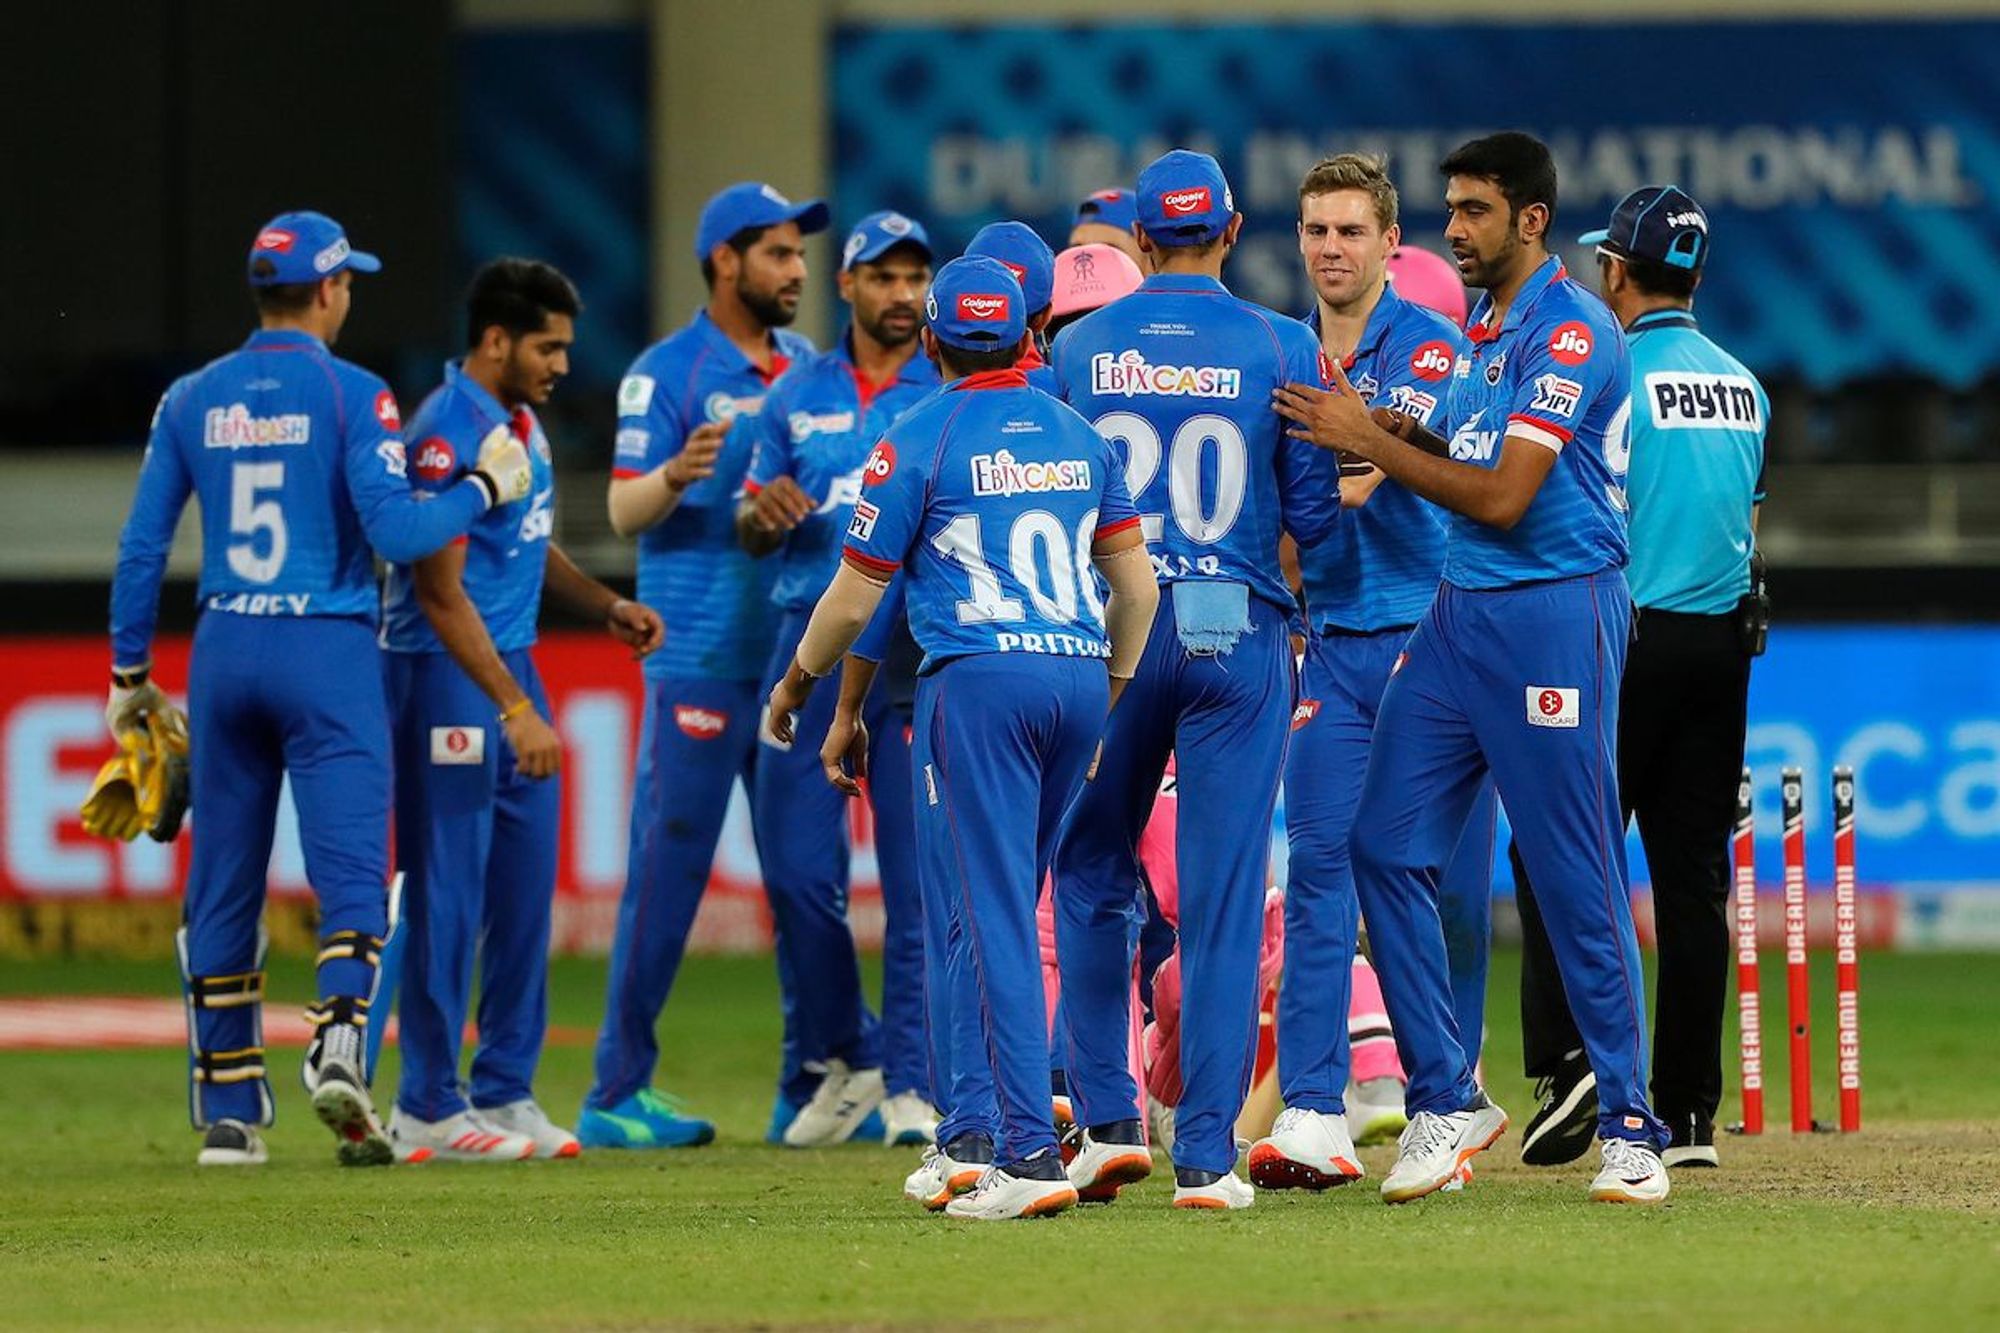 IPL 2020: दिल्ली फिर से अंकतालिका में शीर्ष पर रही, राजस्थान को 13 रनों से हराकर छठी जीत दर्ज की